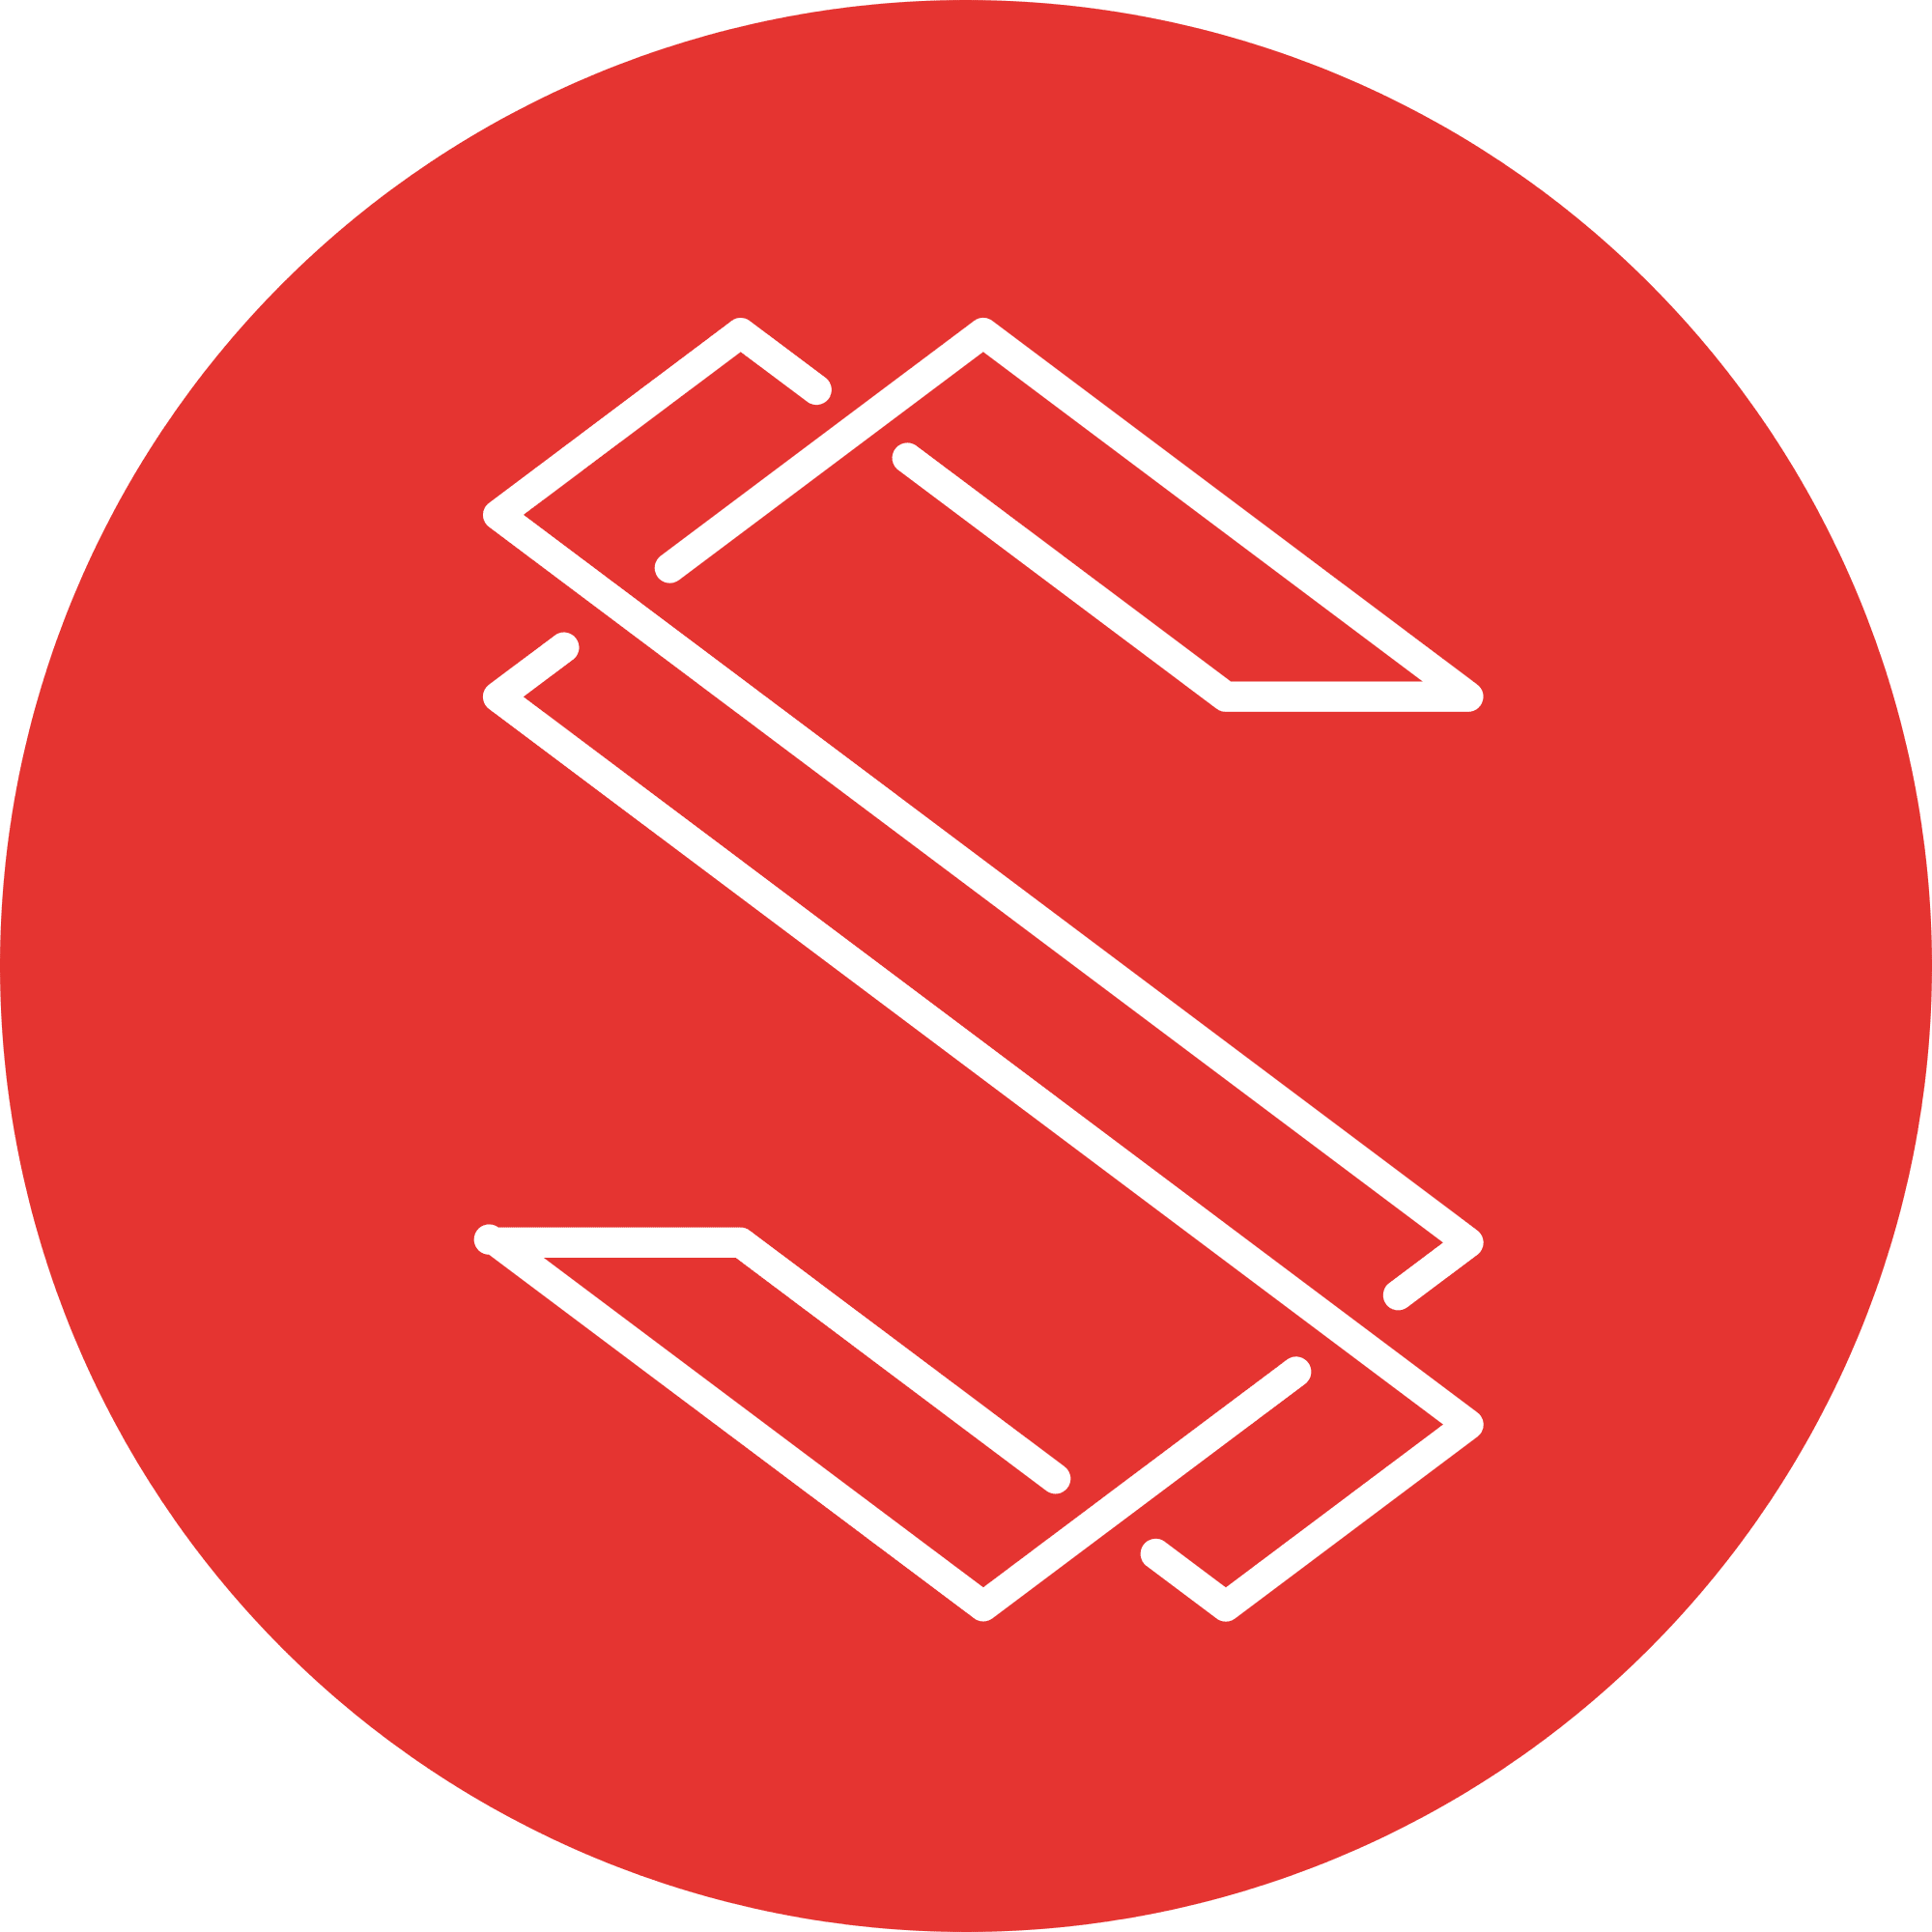 Substratum (SUB) logo